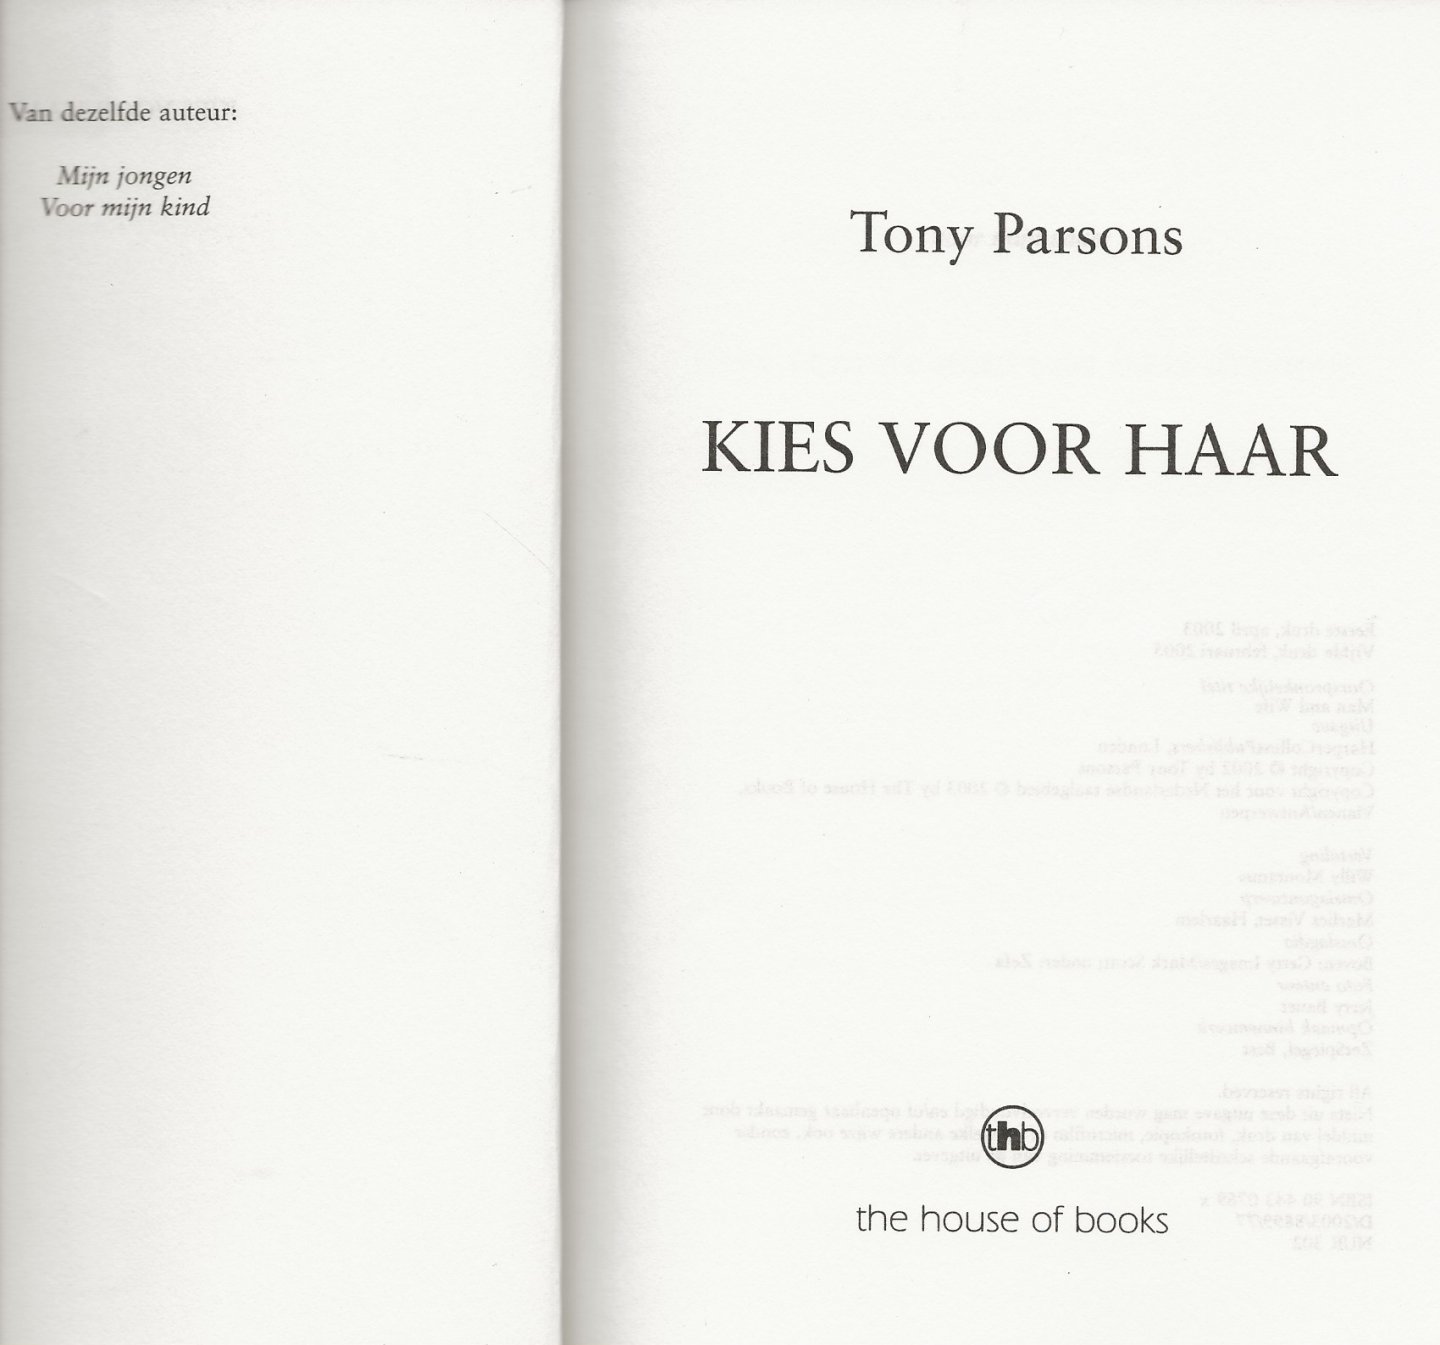 Parsons, Tony  Vertaling Willy Montanus  Omslagontwerp Marlies Visser  te Haarlem . - Kies voor haar